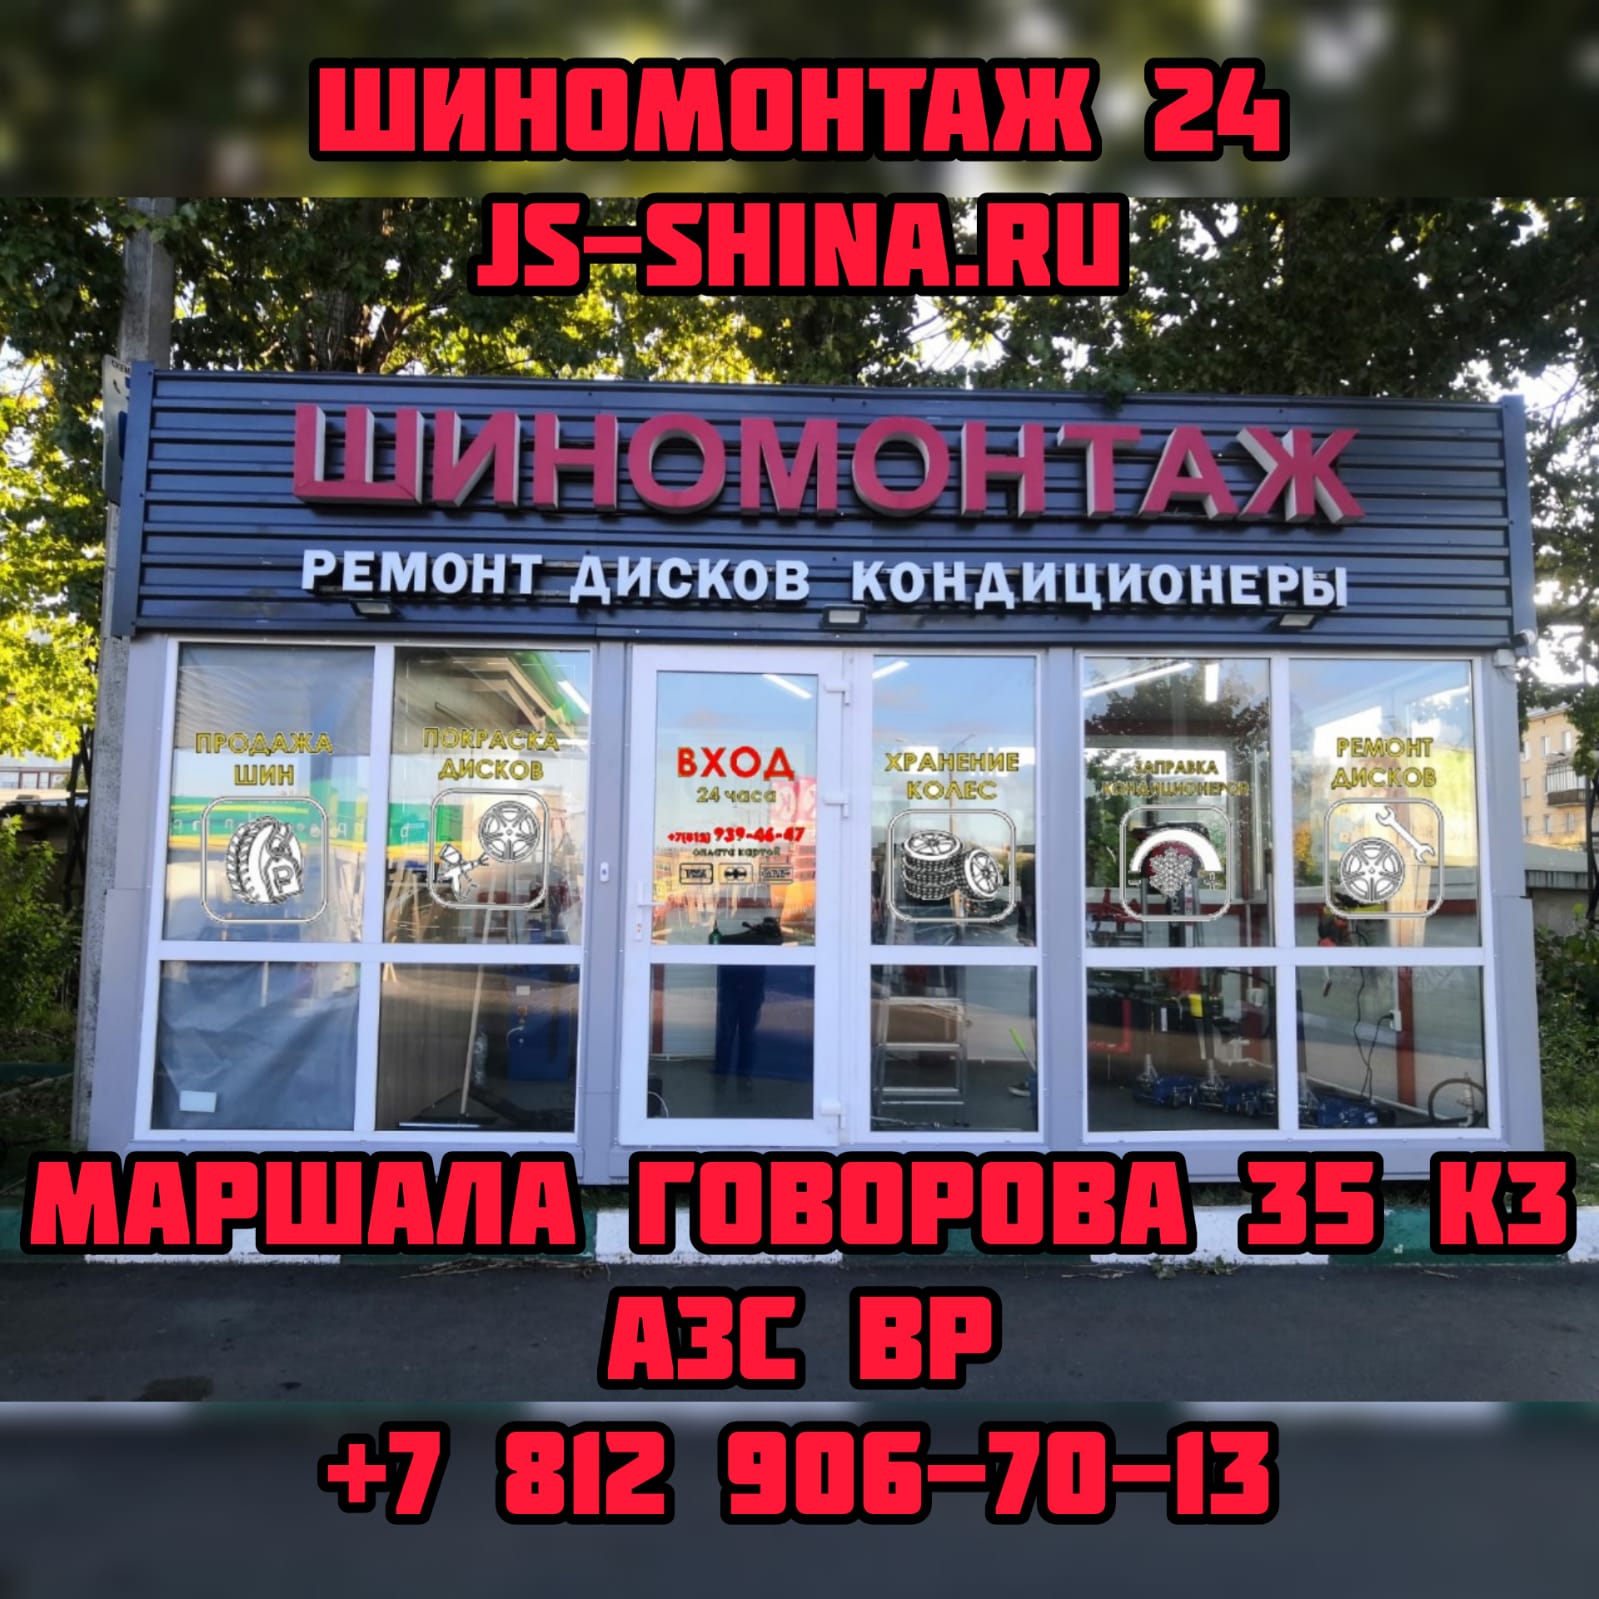 Шиномонтаж 24 часа в СПб, Маршала Говорова, 35 к3 ремонт дисков